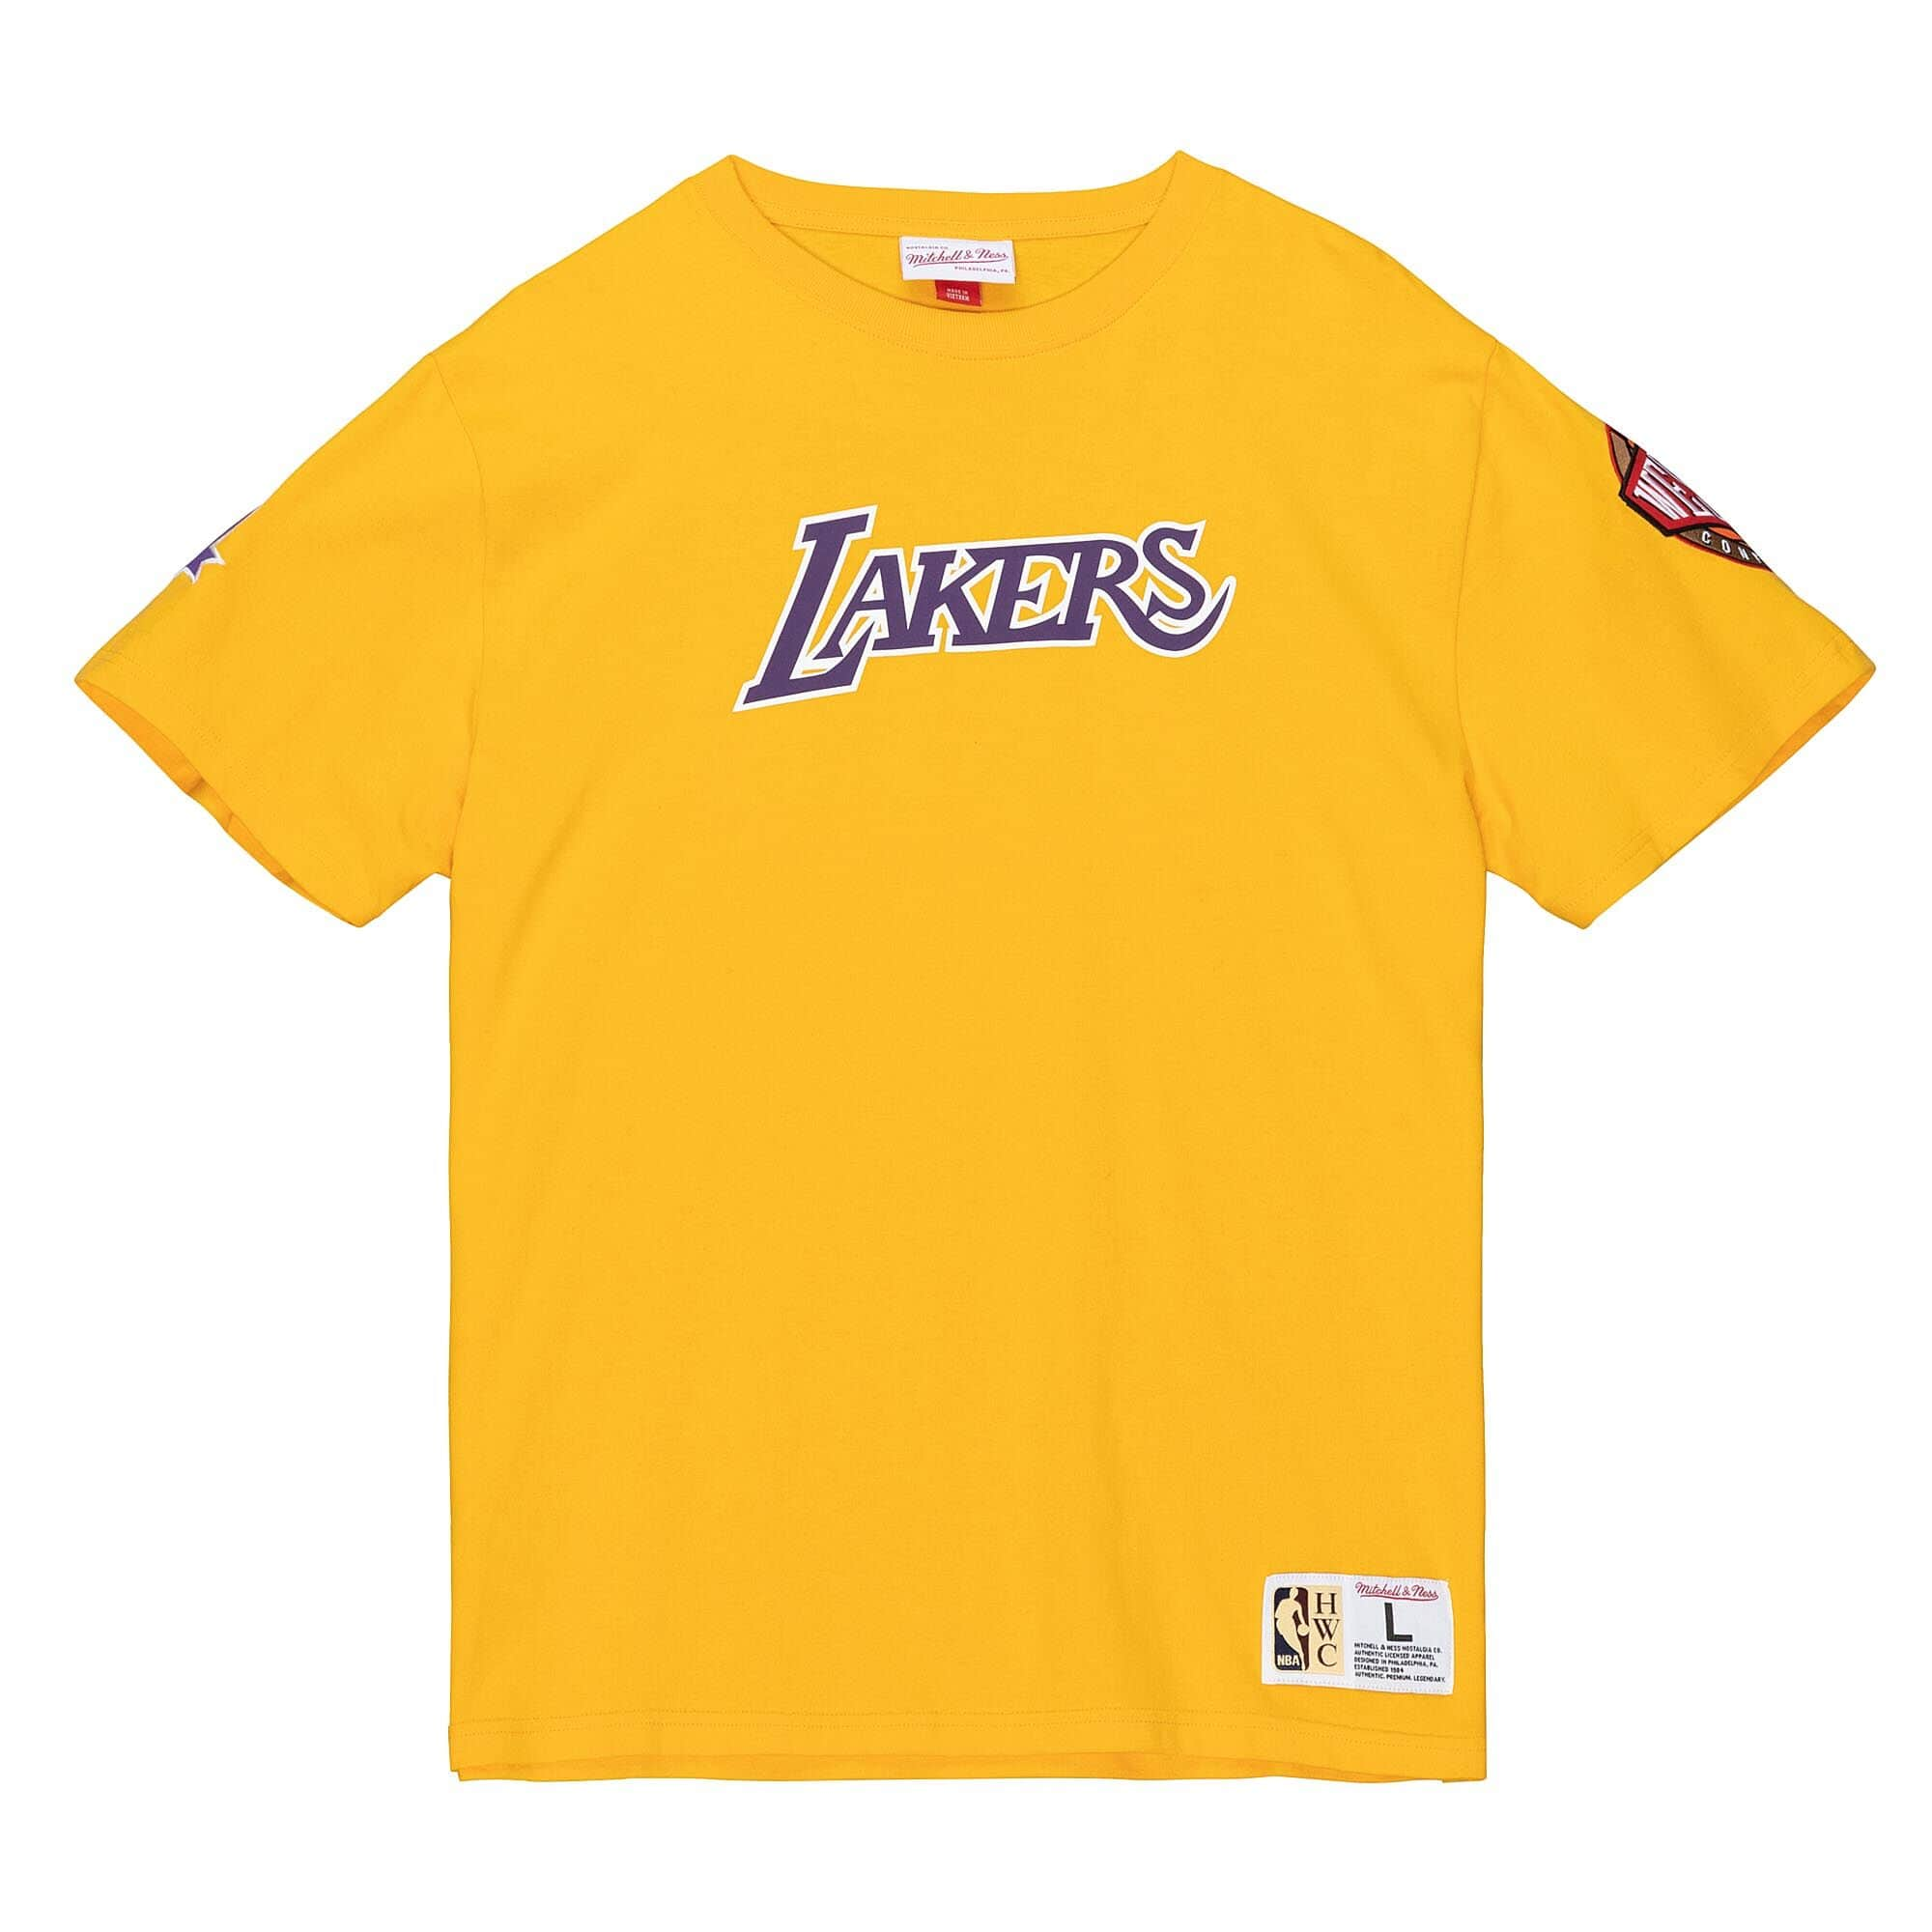 NBA Team Lakers T-Shirt, White / Yellow